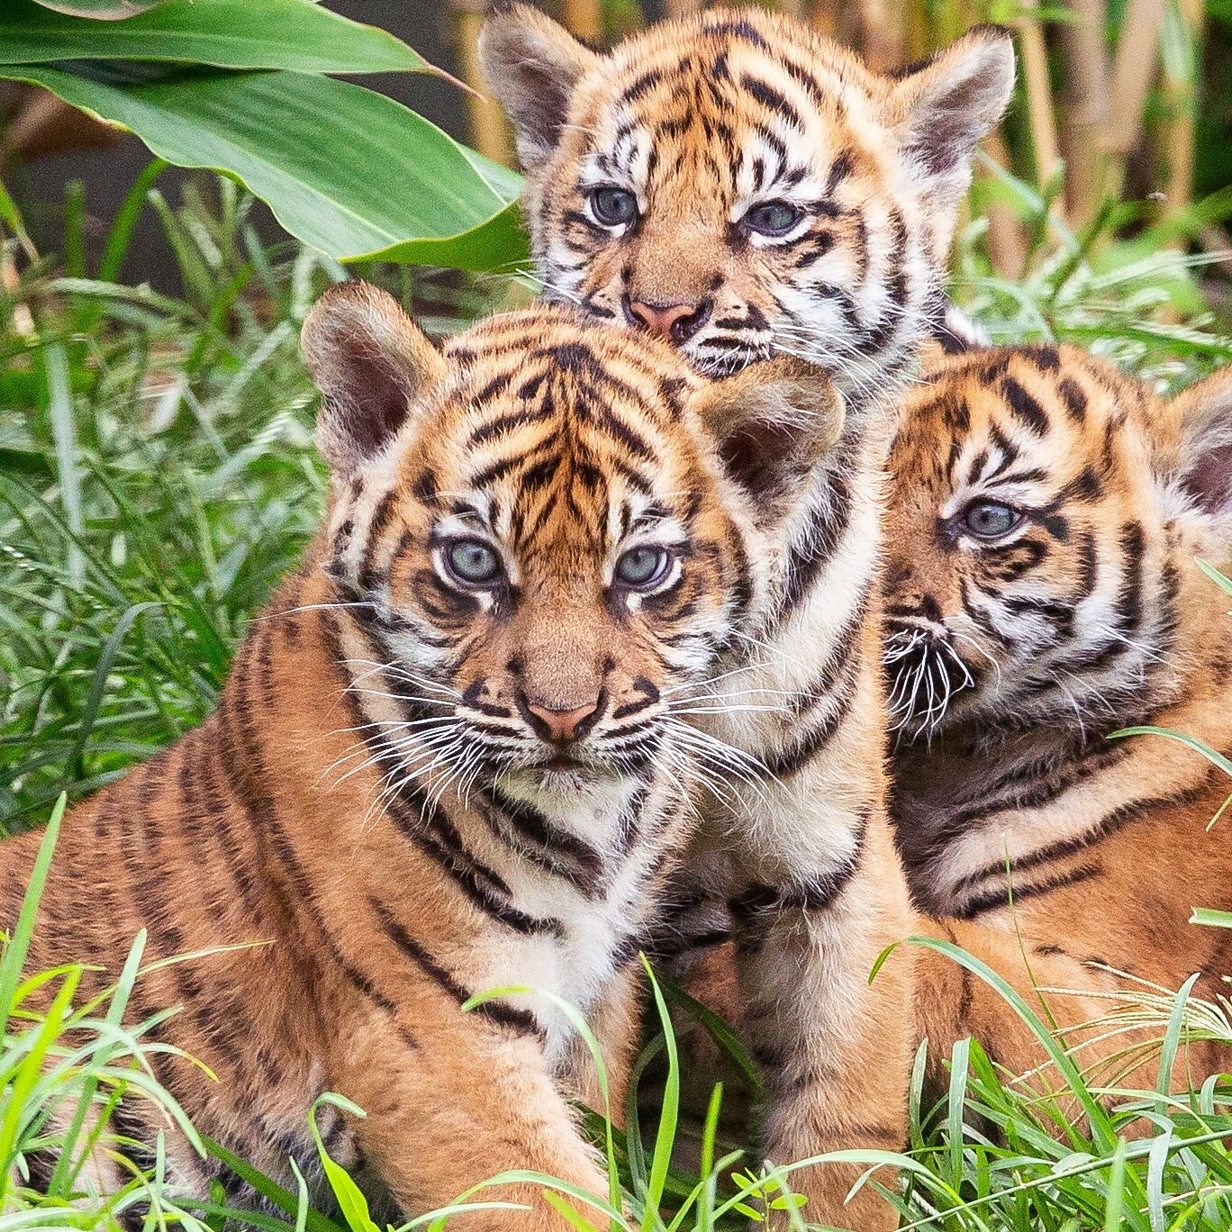 3 Tiger Cubs